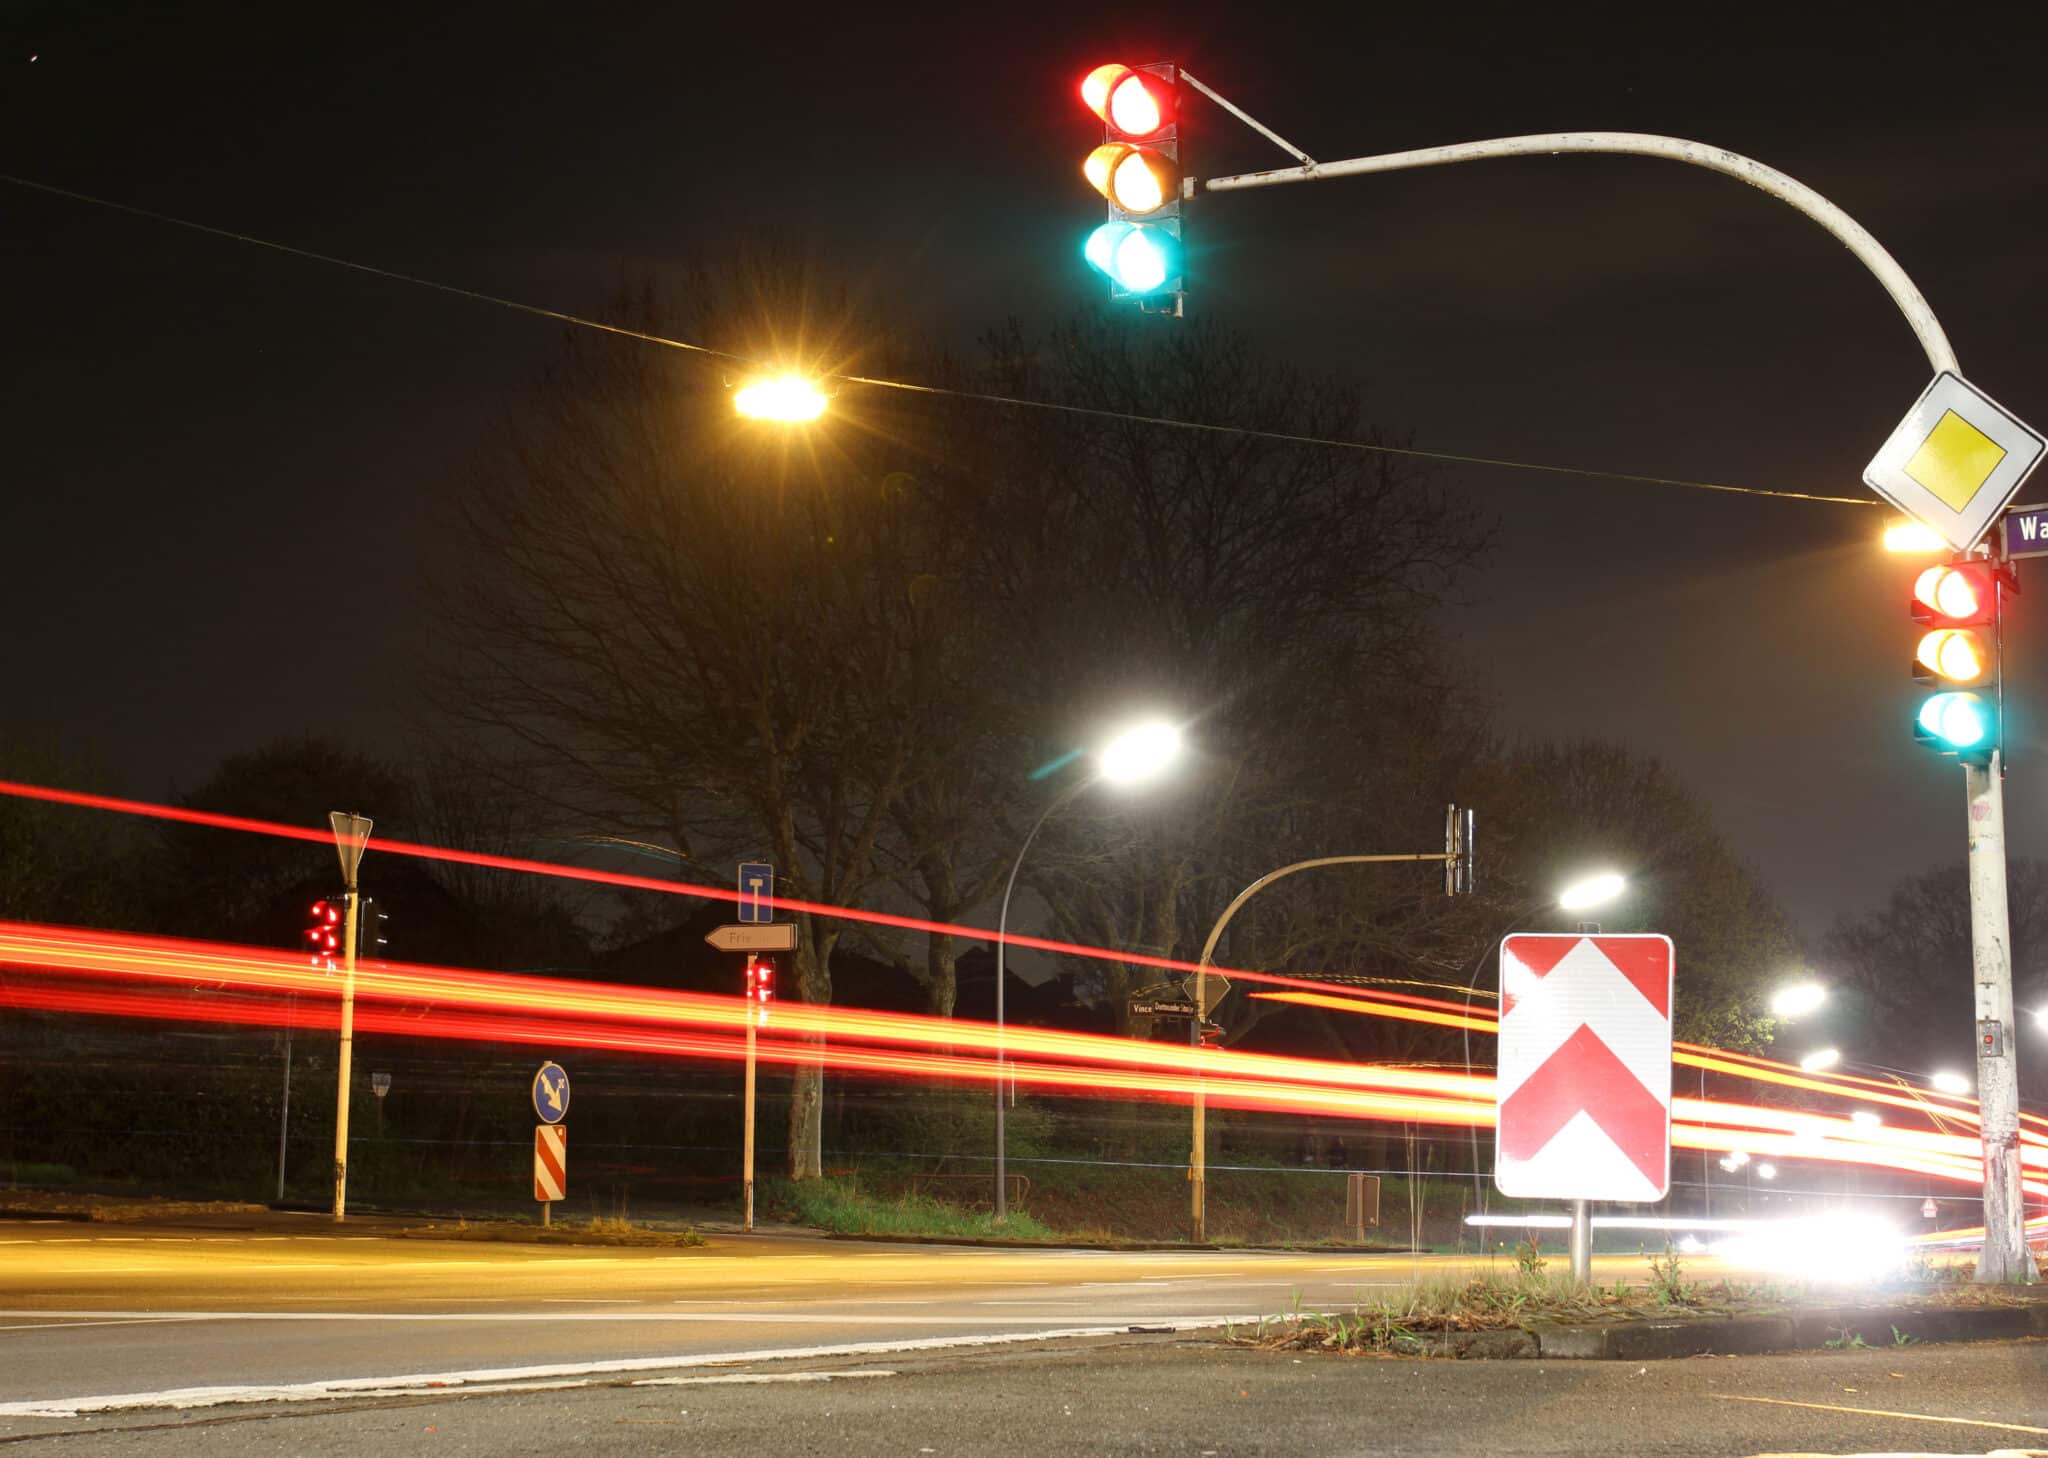 Deutsche Polizei führt Rotlicht ein: Autofahrer, seht die Signale! 